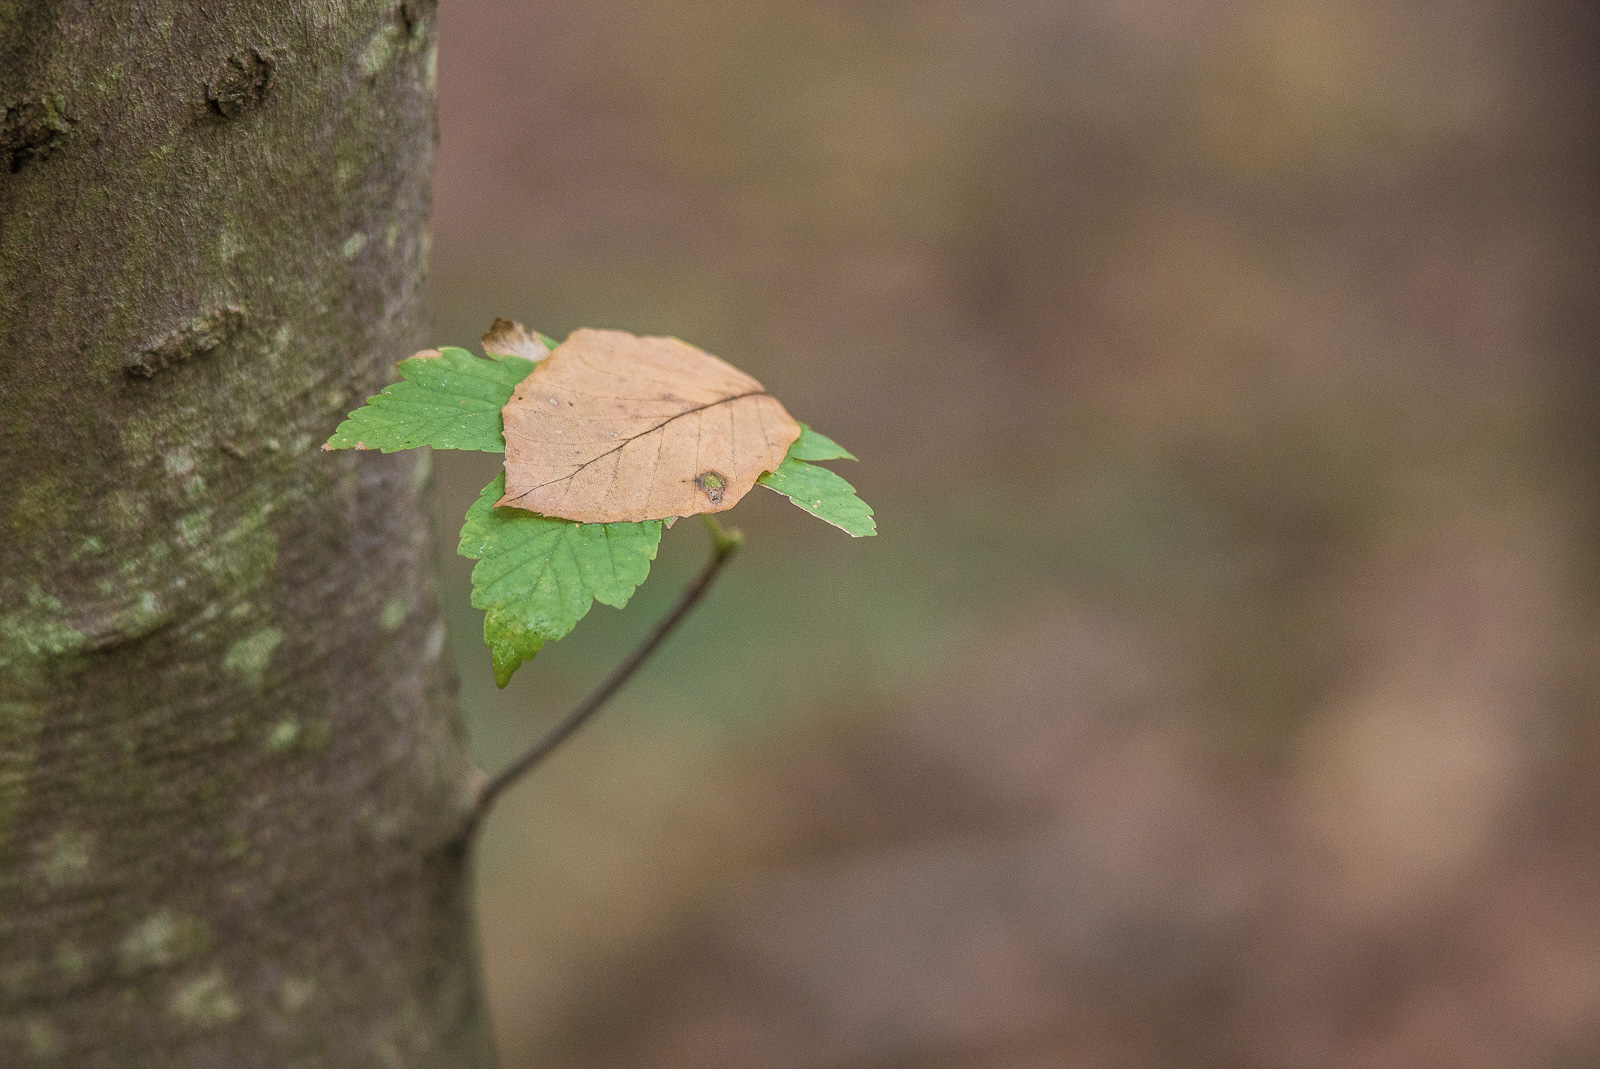 Auf einem Ast mit mehreren grünen Blättern ist ein gelb-braunes Blatt einer anderen Art gelandet.